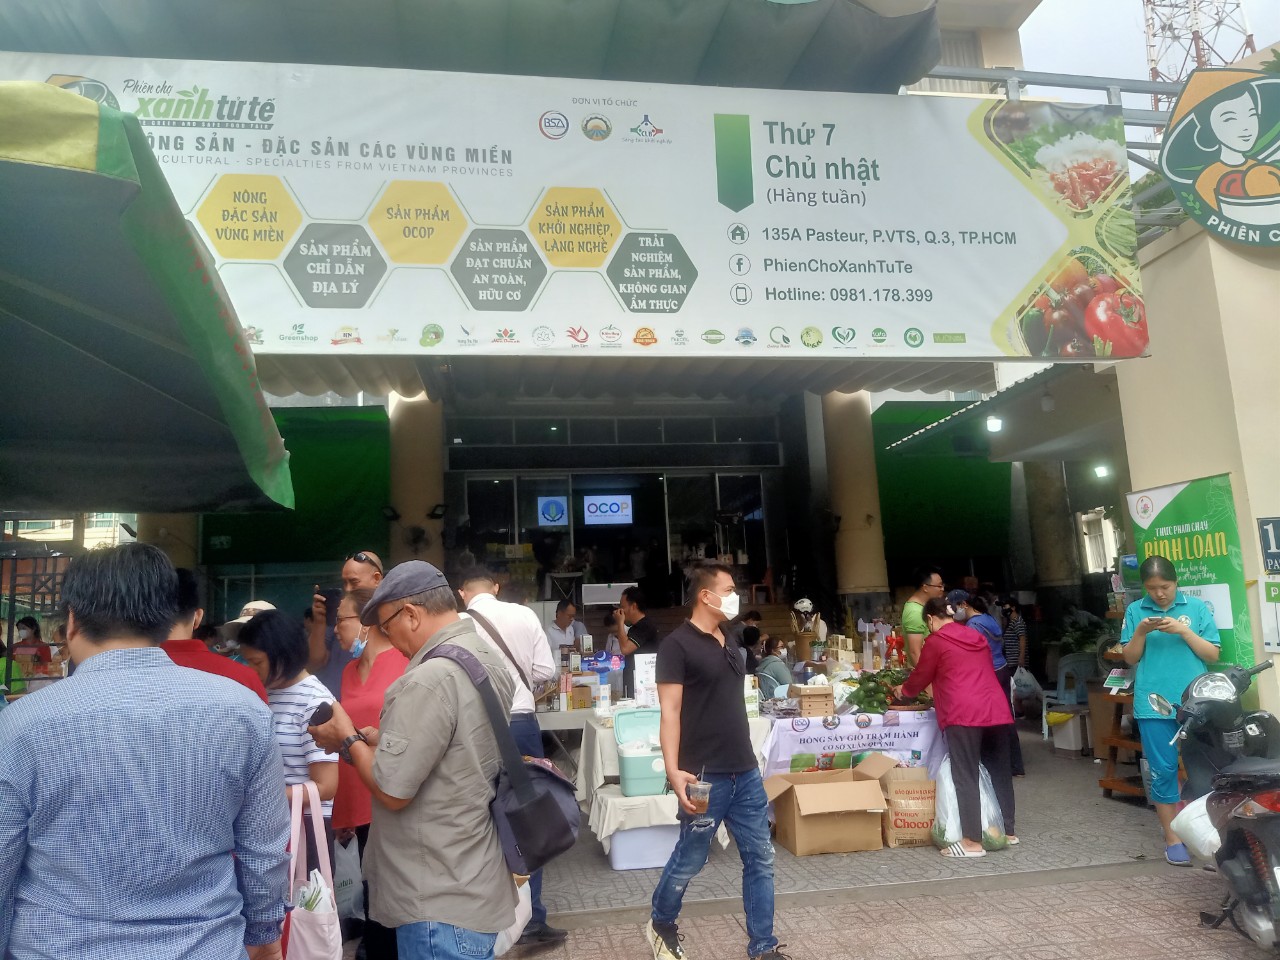 Tây Ninh tham gia Phiên Chợ Xanh tử tế tại Thành phố Hồ Chí Minh